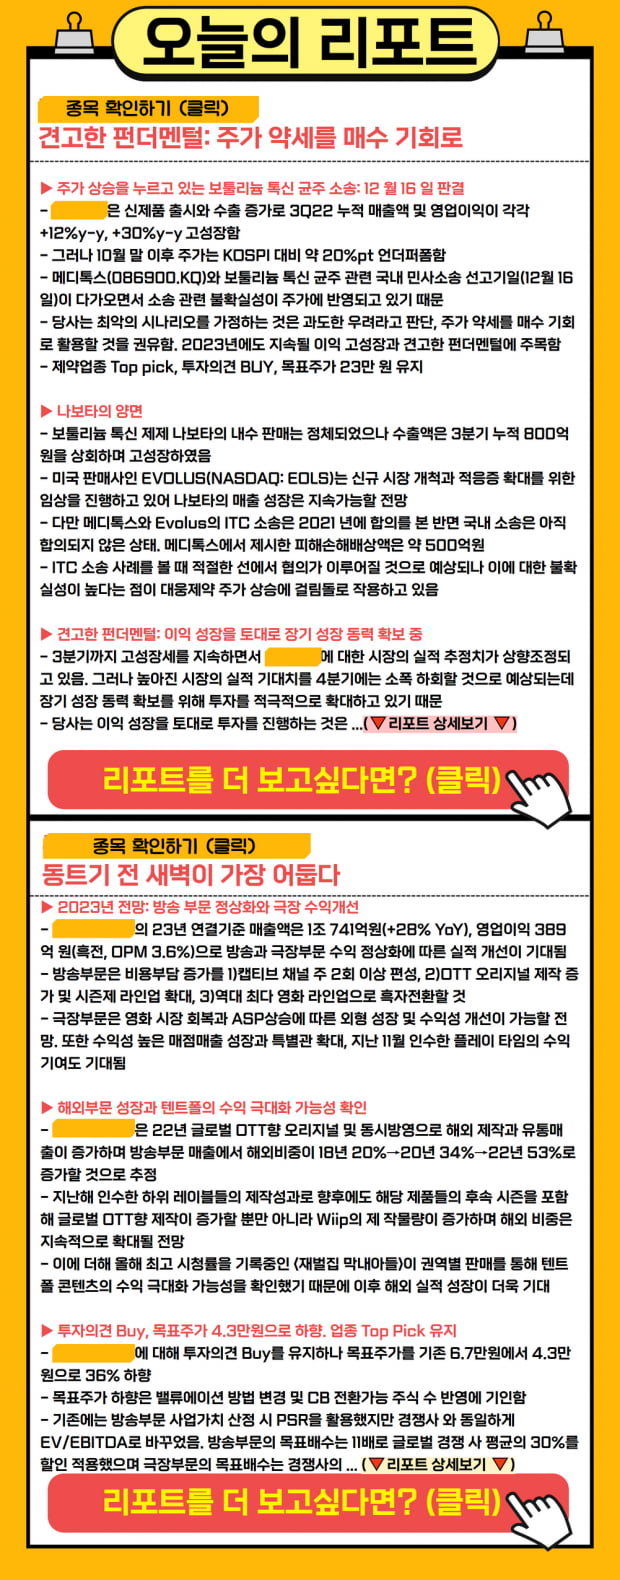 [리포트] 견고한 펀더멘털, 업종 TOP PICK인 오늘의 종목은?